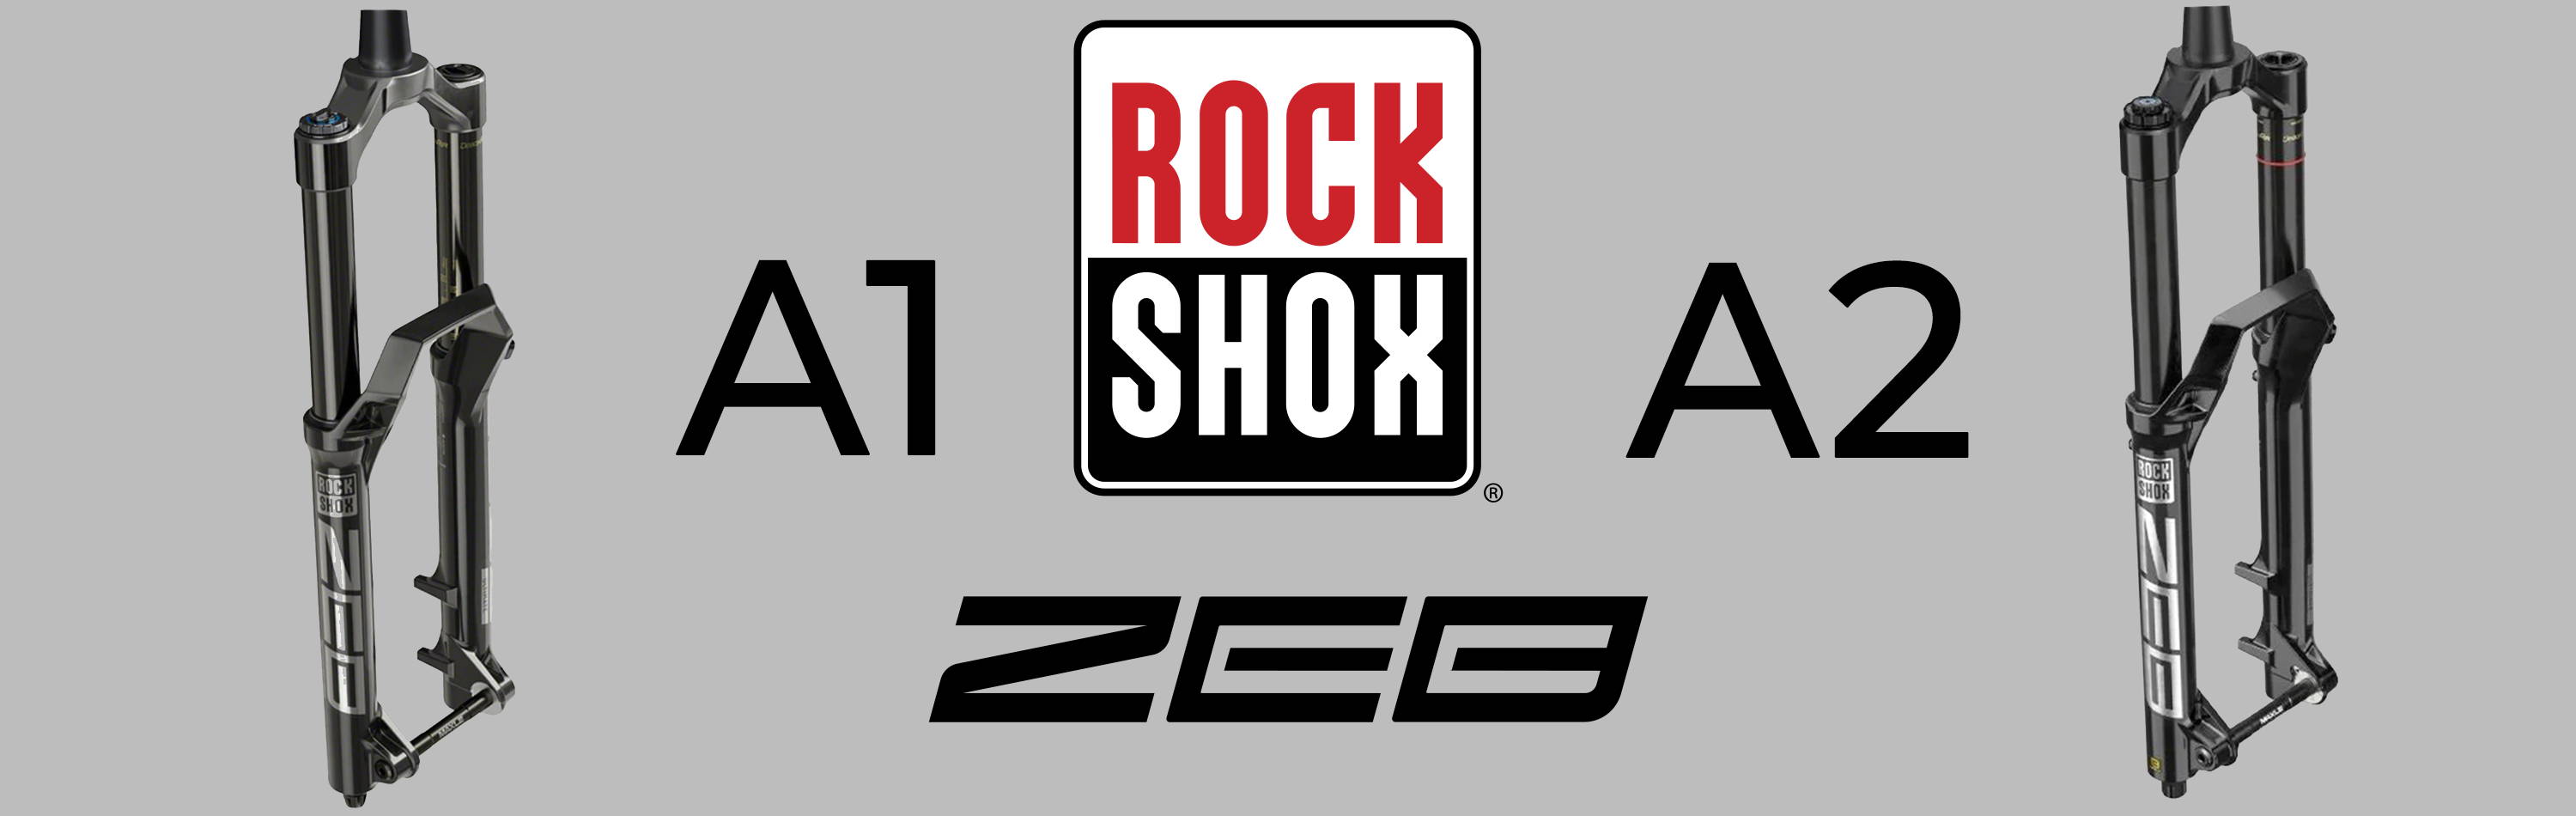 rockshox zeb a1 vs a2 mountain bike fork comparison banner image